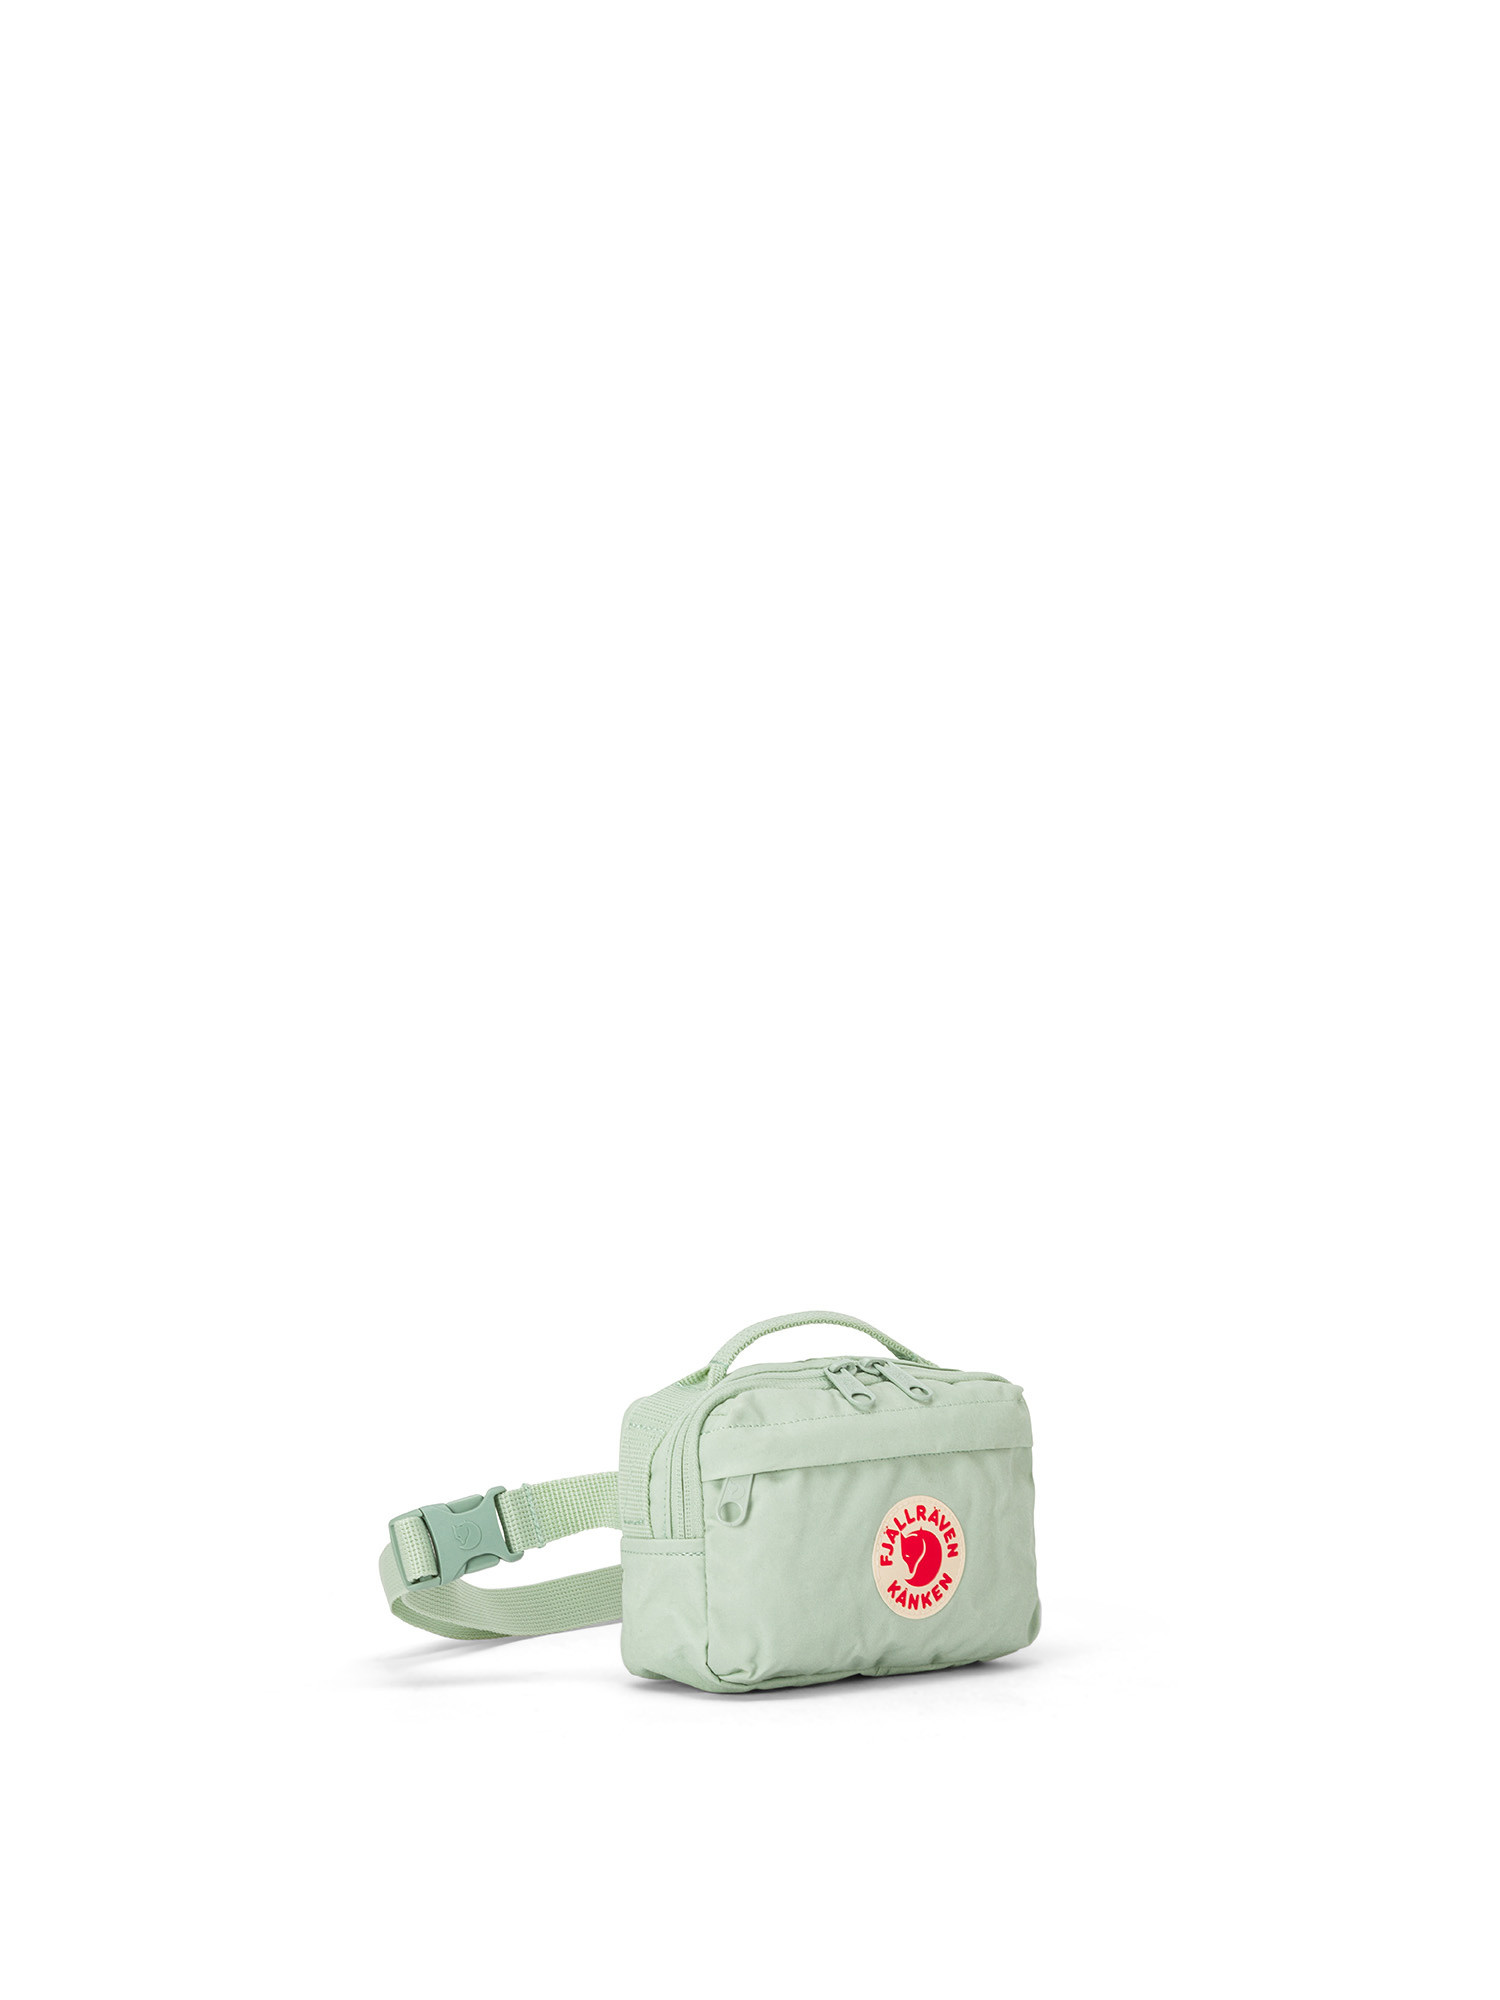 Fjallraven - Kånken hip bag, Green, large image number 1